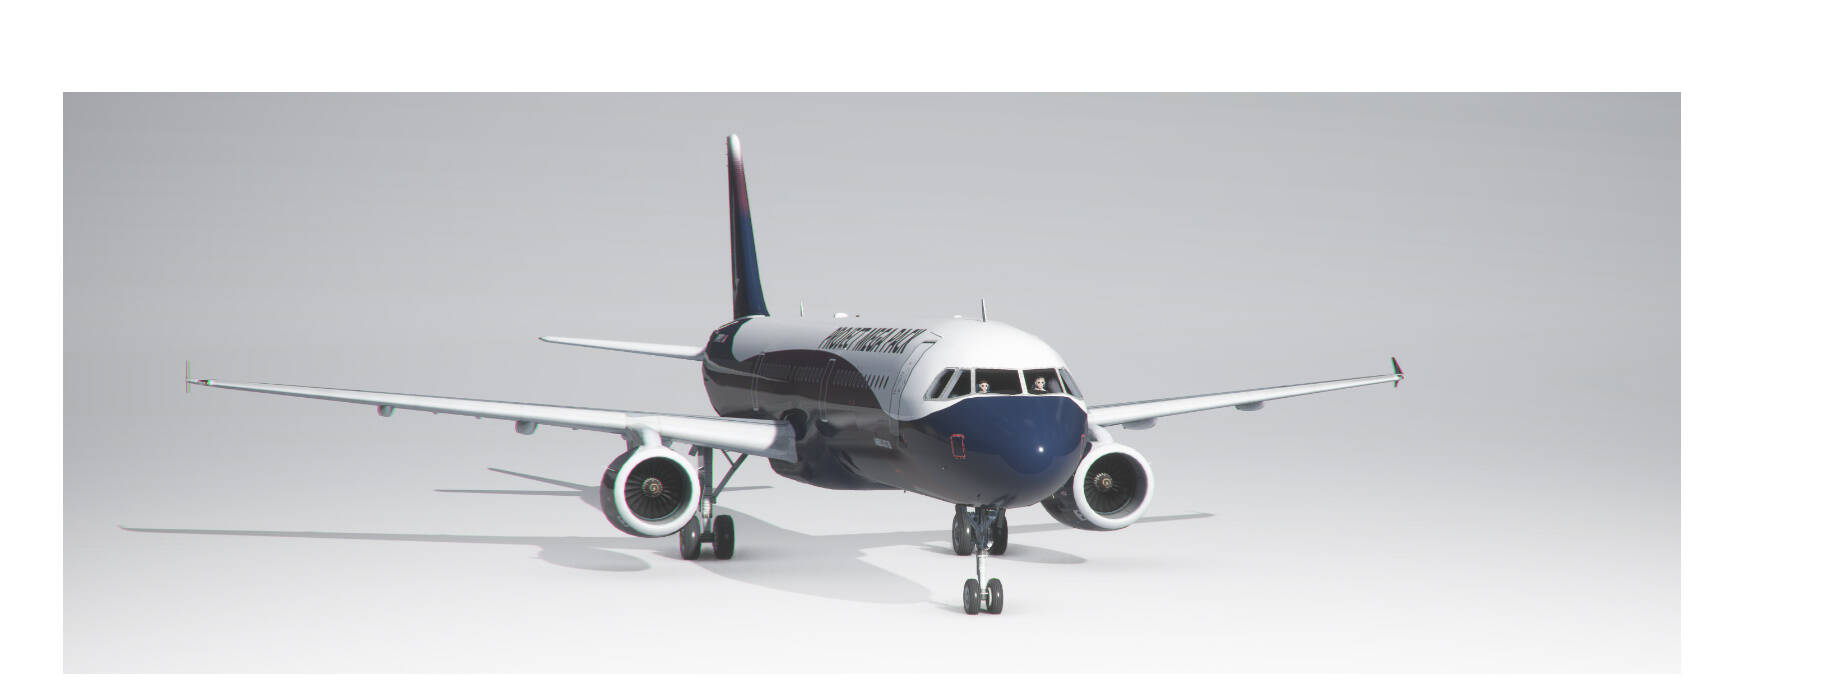 Boeing 787 Dreamliner Mega Pack for FSX & P3D